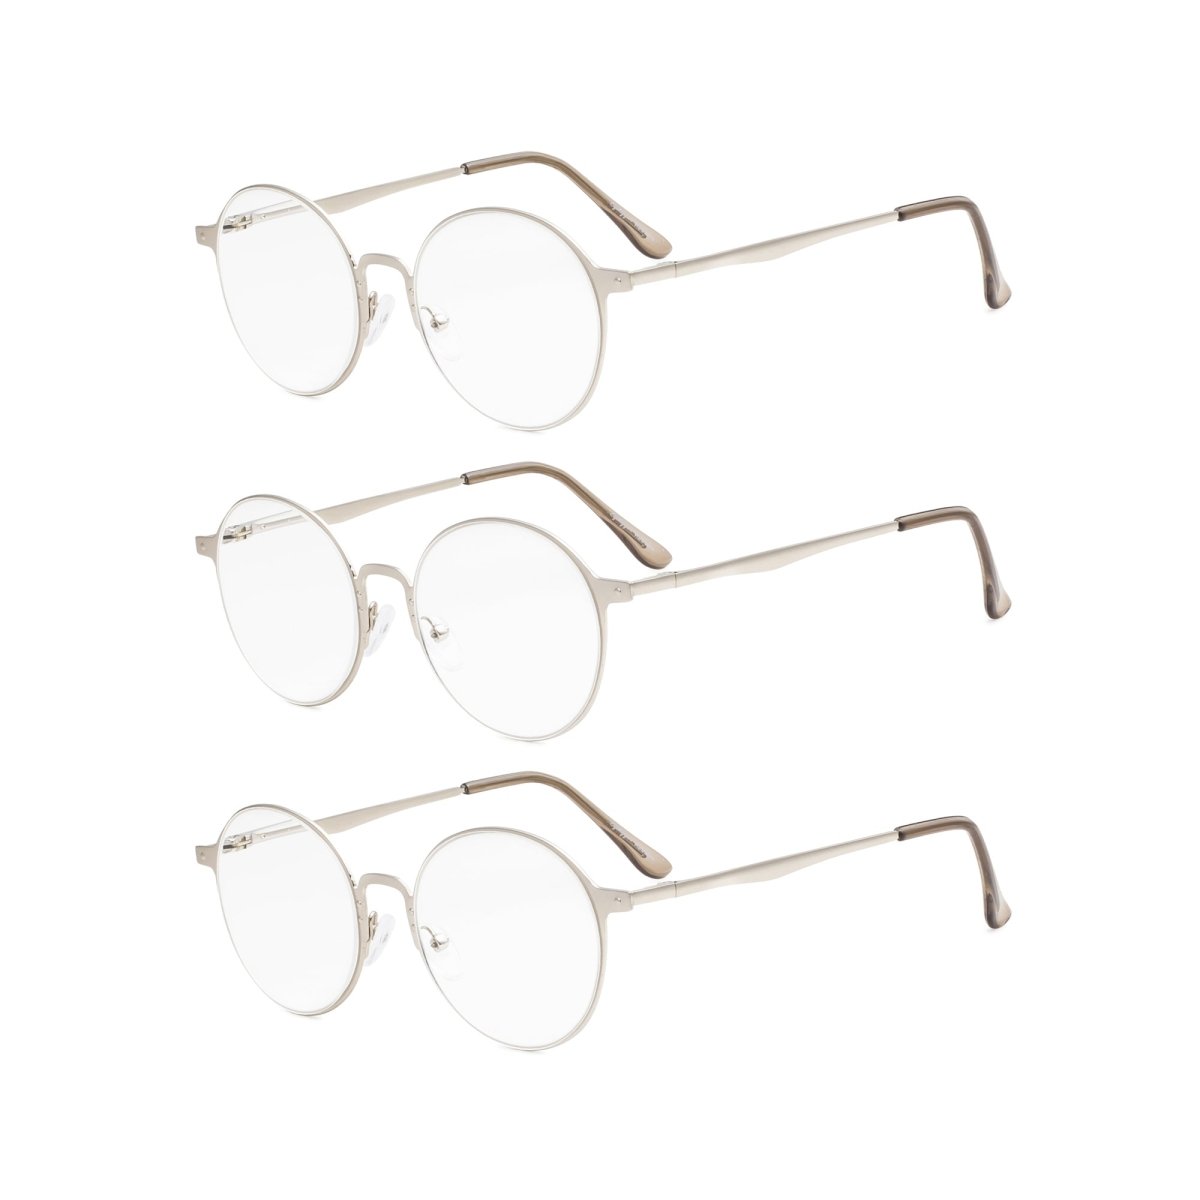 3 Pack Vintage Round Reading Glasses Women Readers Men – eyekeeper.com